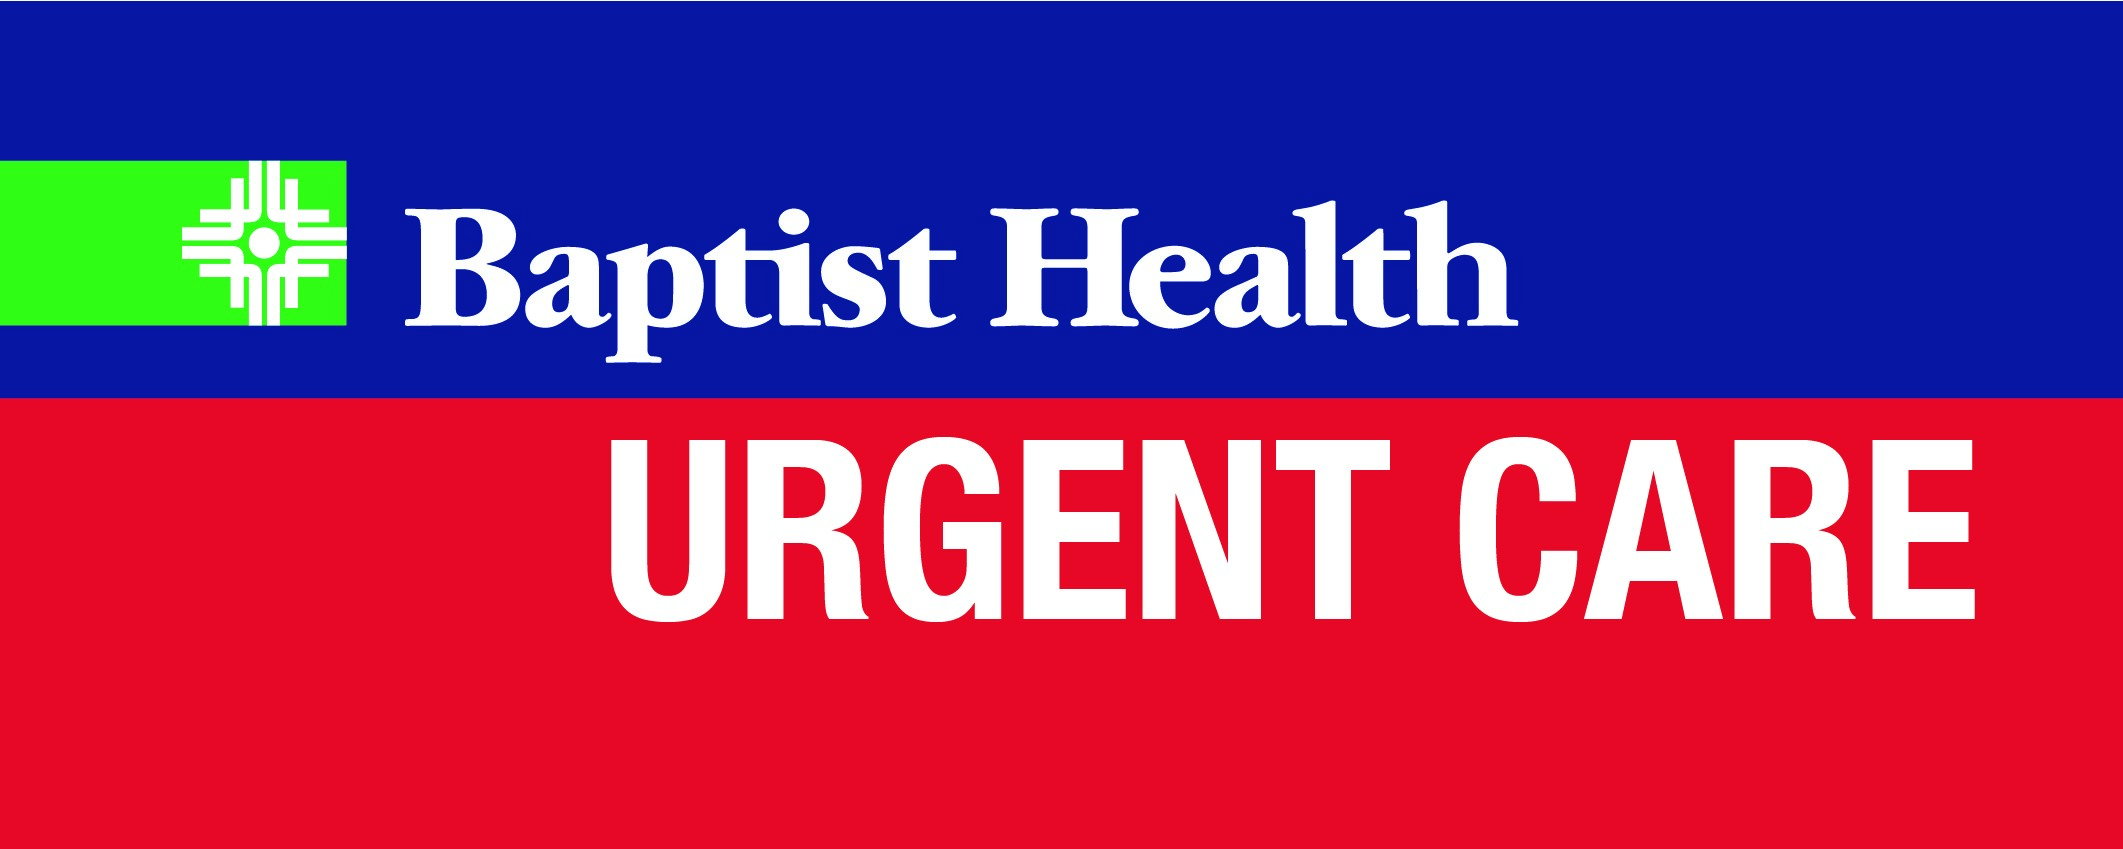 Baptist Health Urgent Care - Van Buren Logo